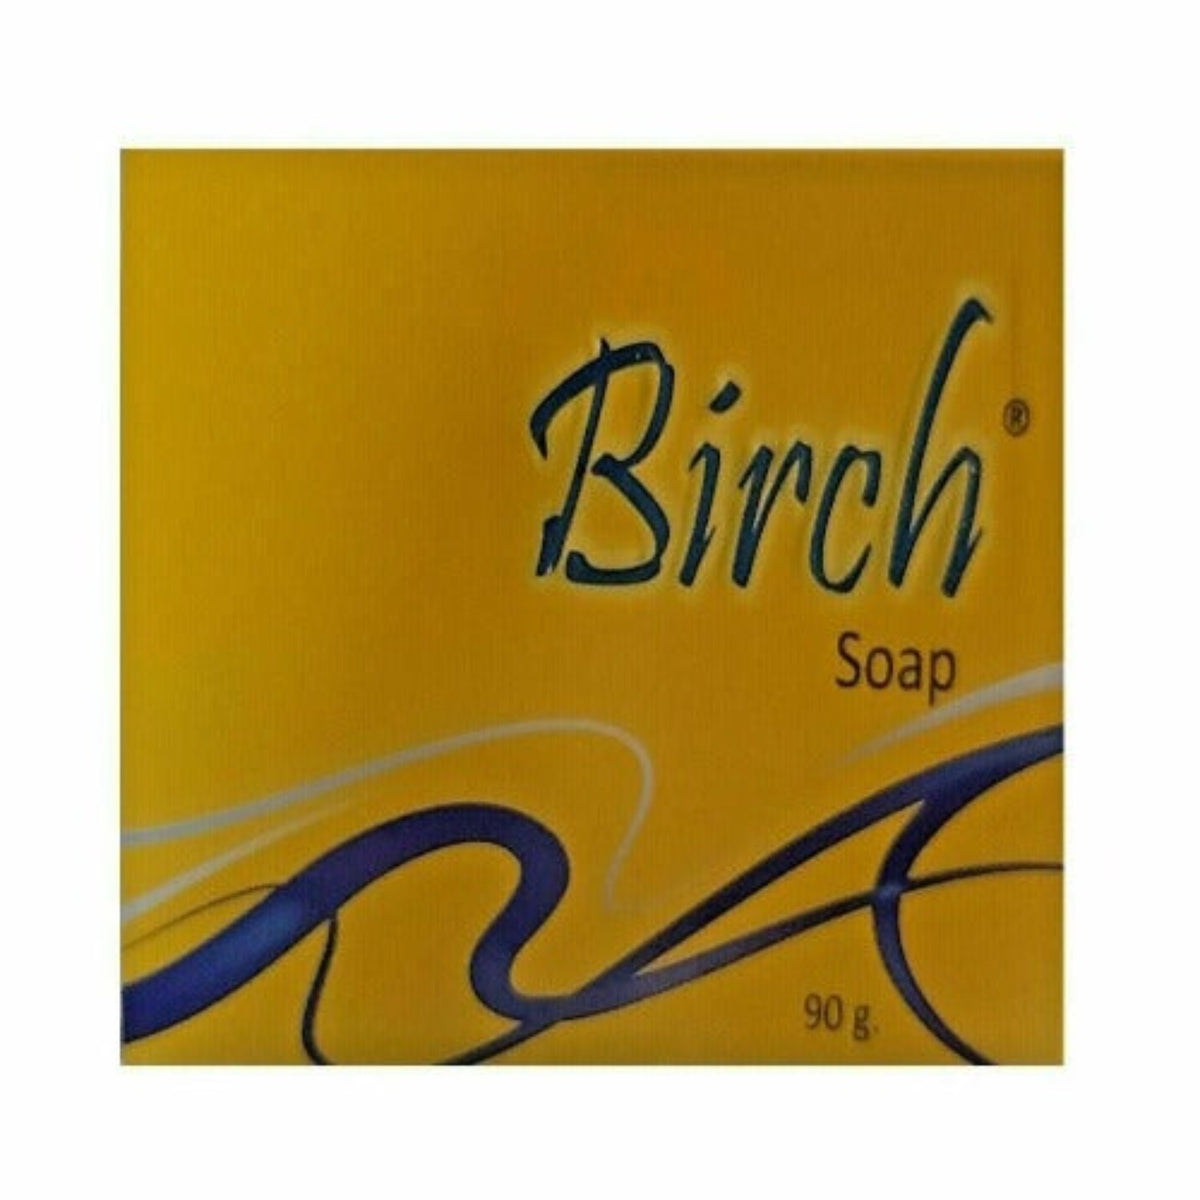 Aries Biocare Birch Skin Soap 90 Gm